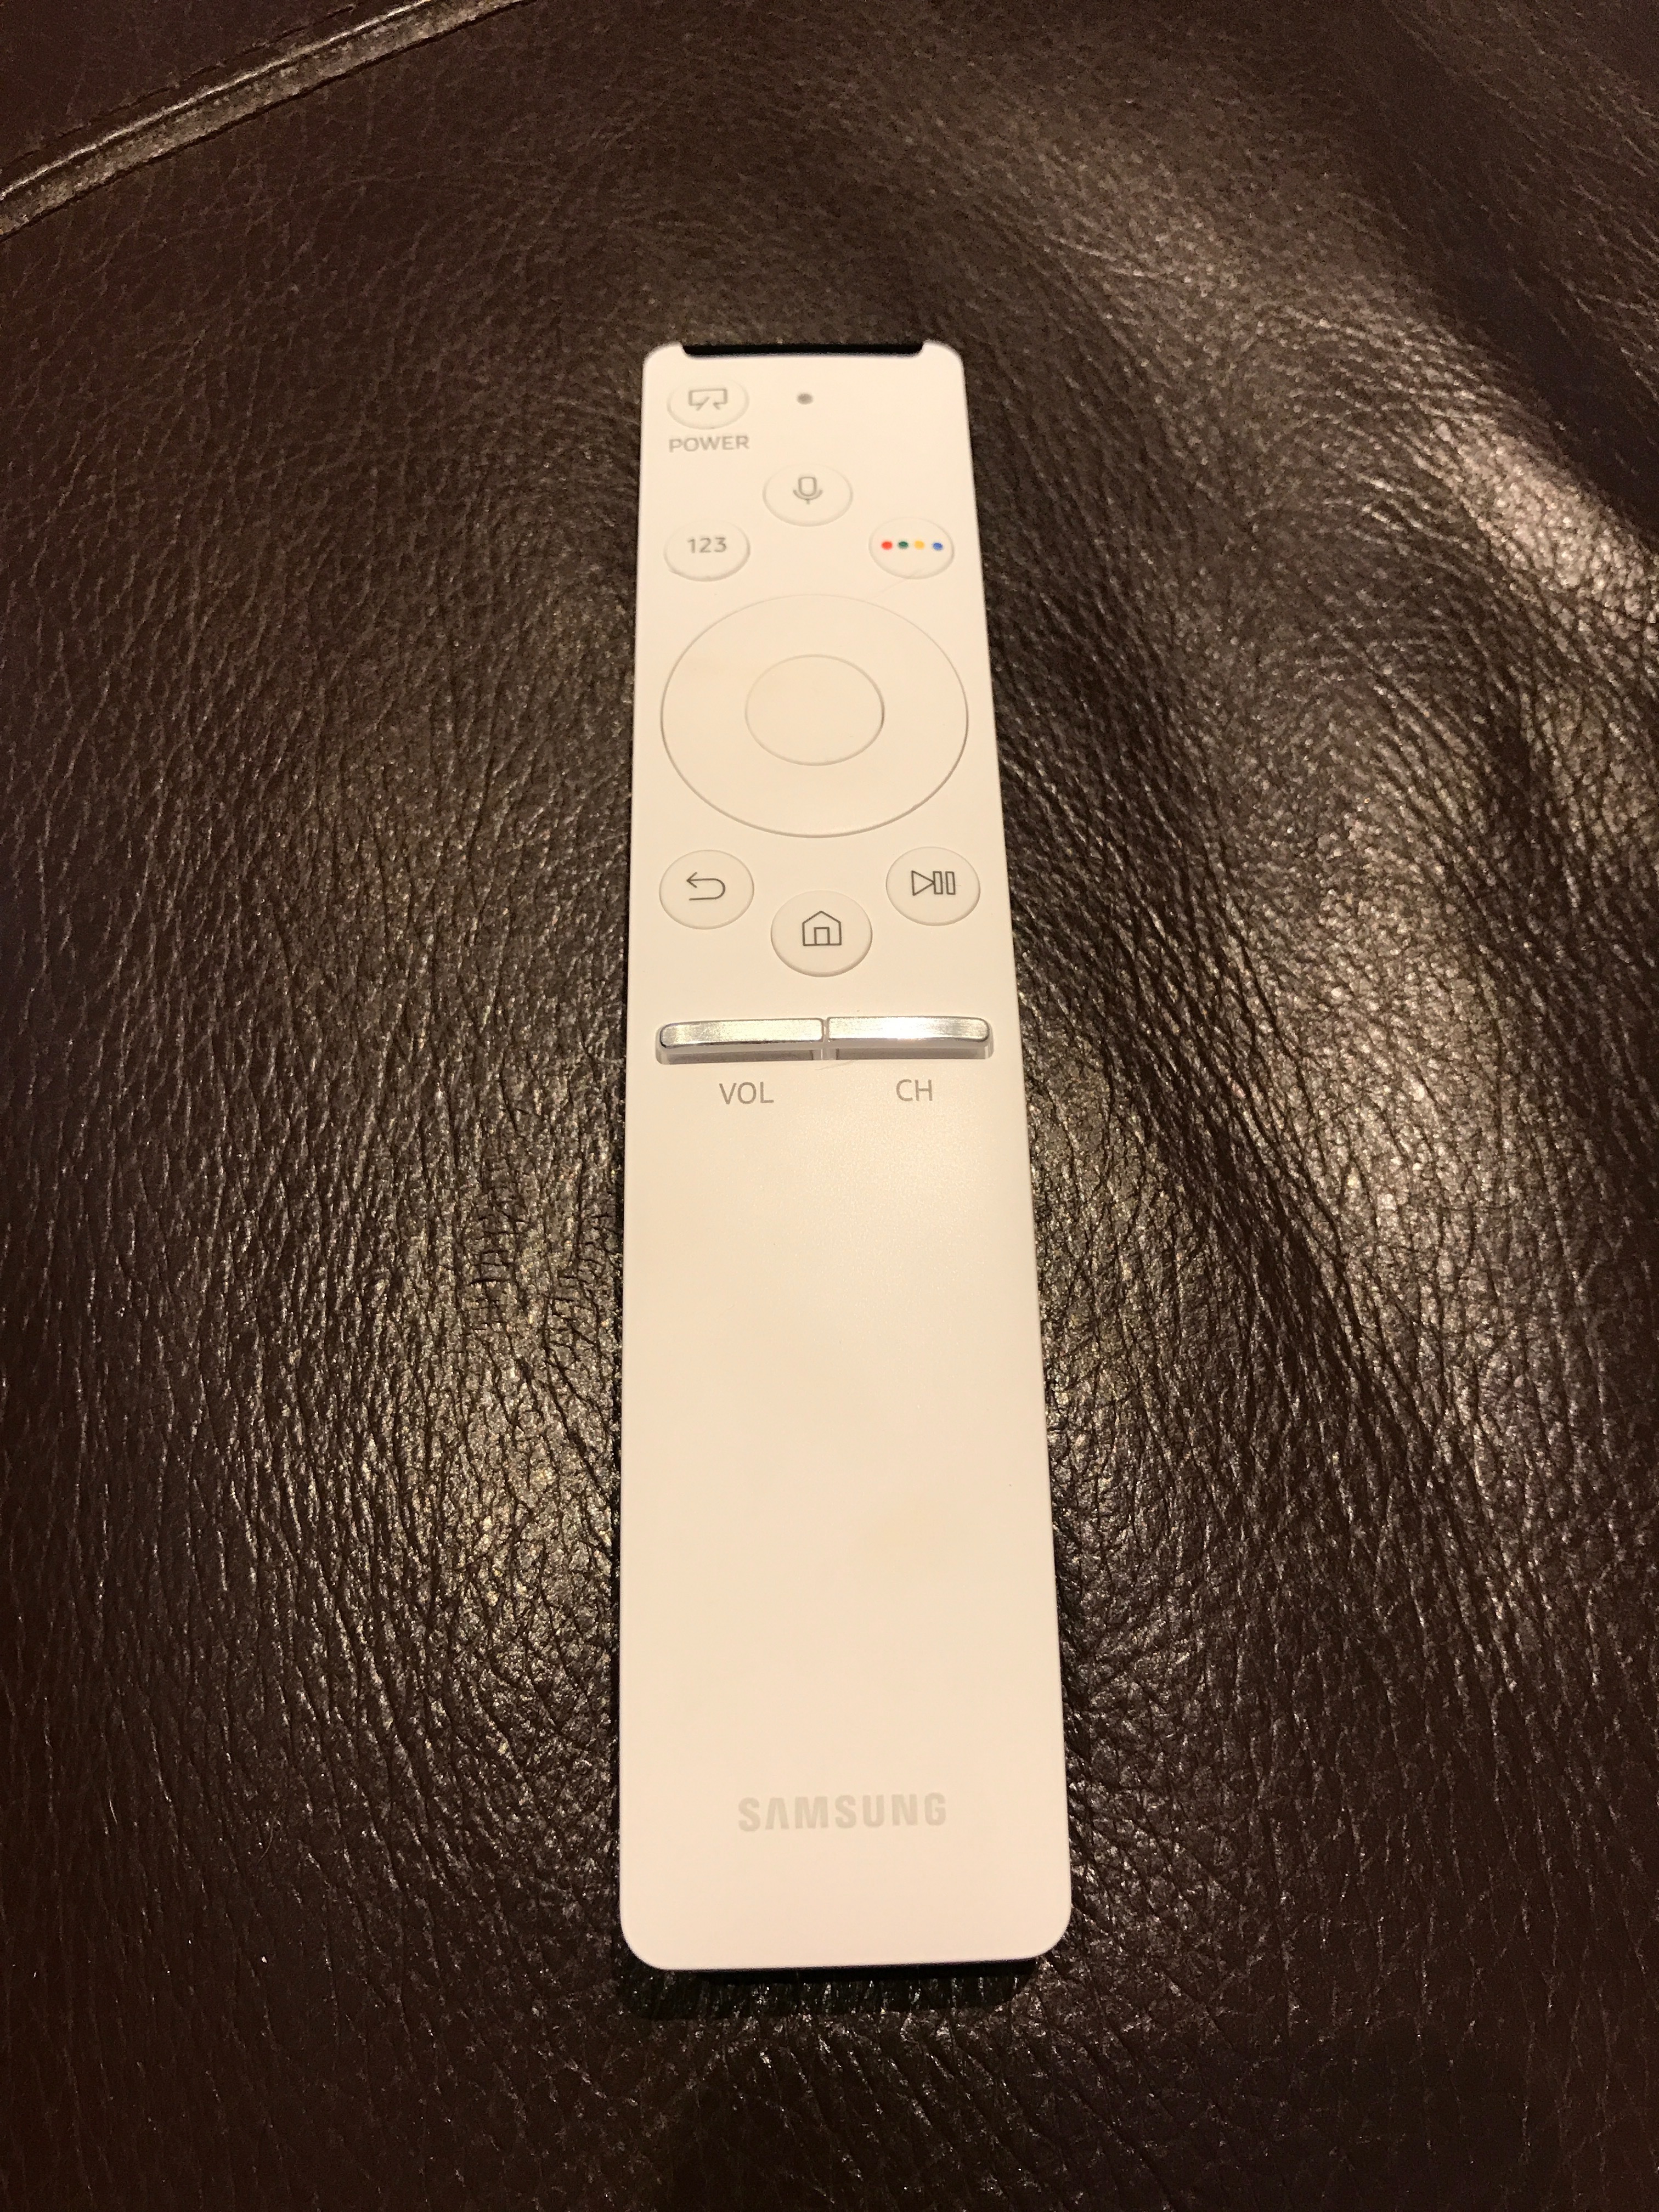 sonos with samsung remote